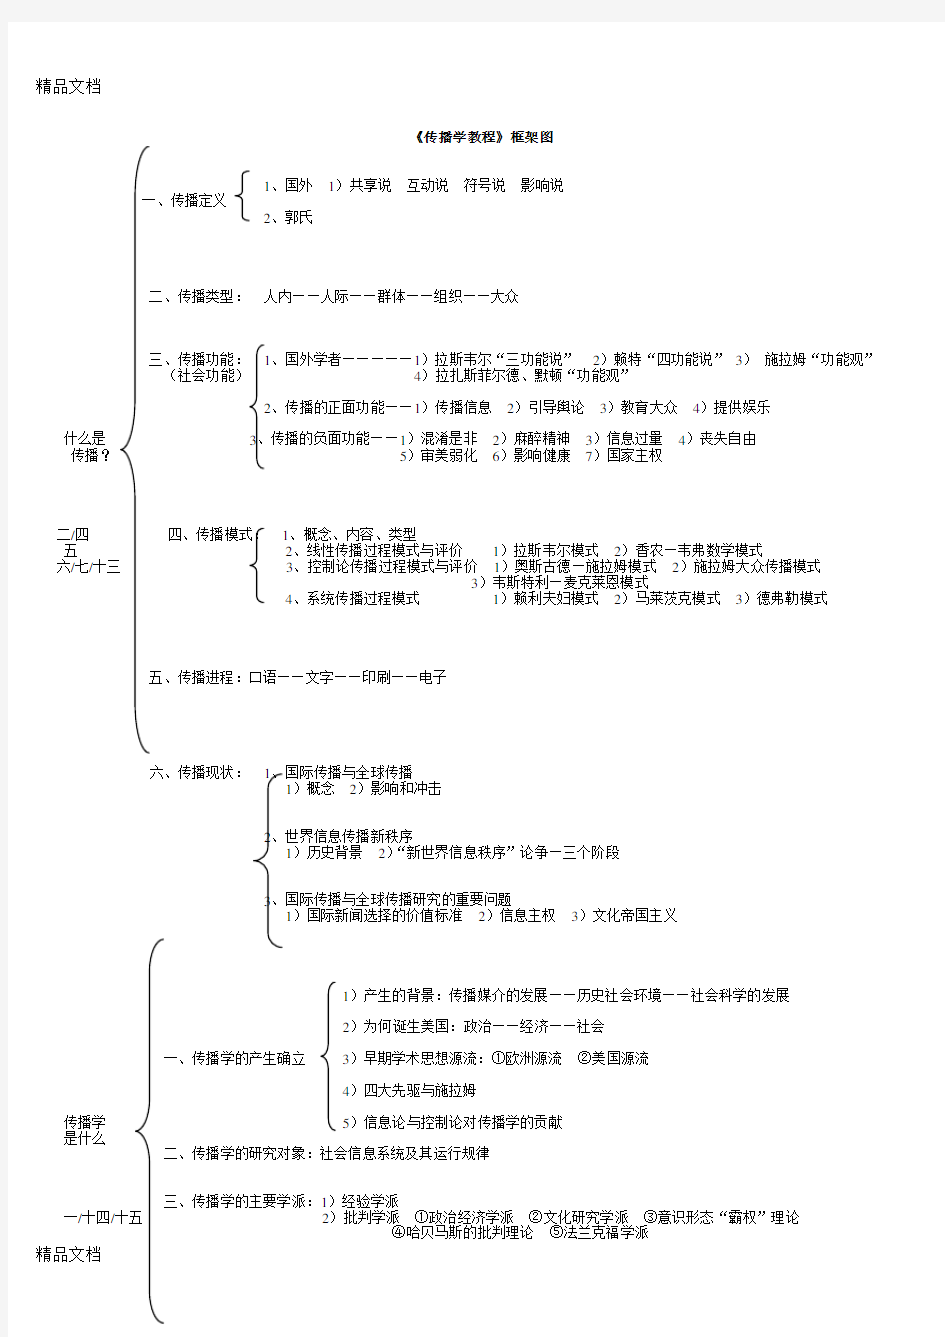 最新传播学教程框架图郭庆光版(整理版)